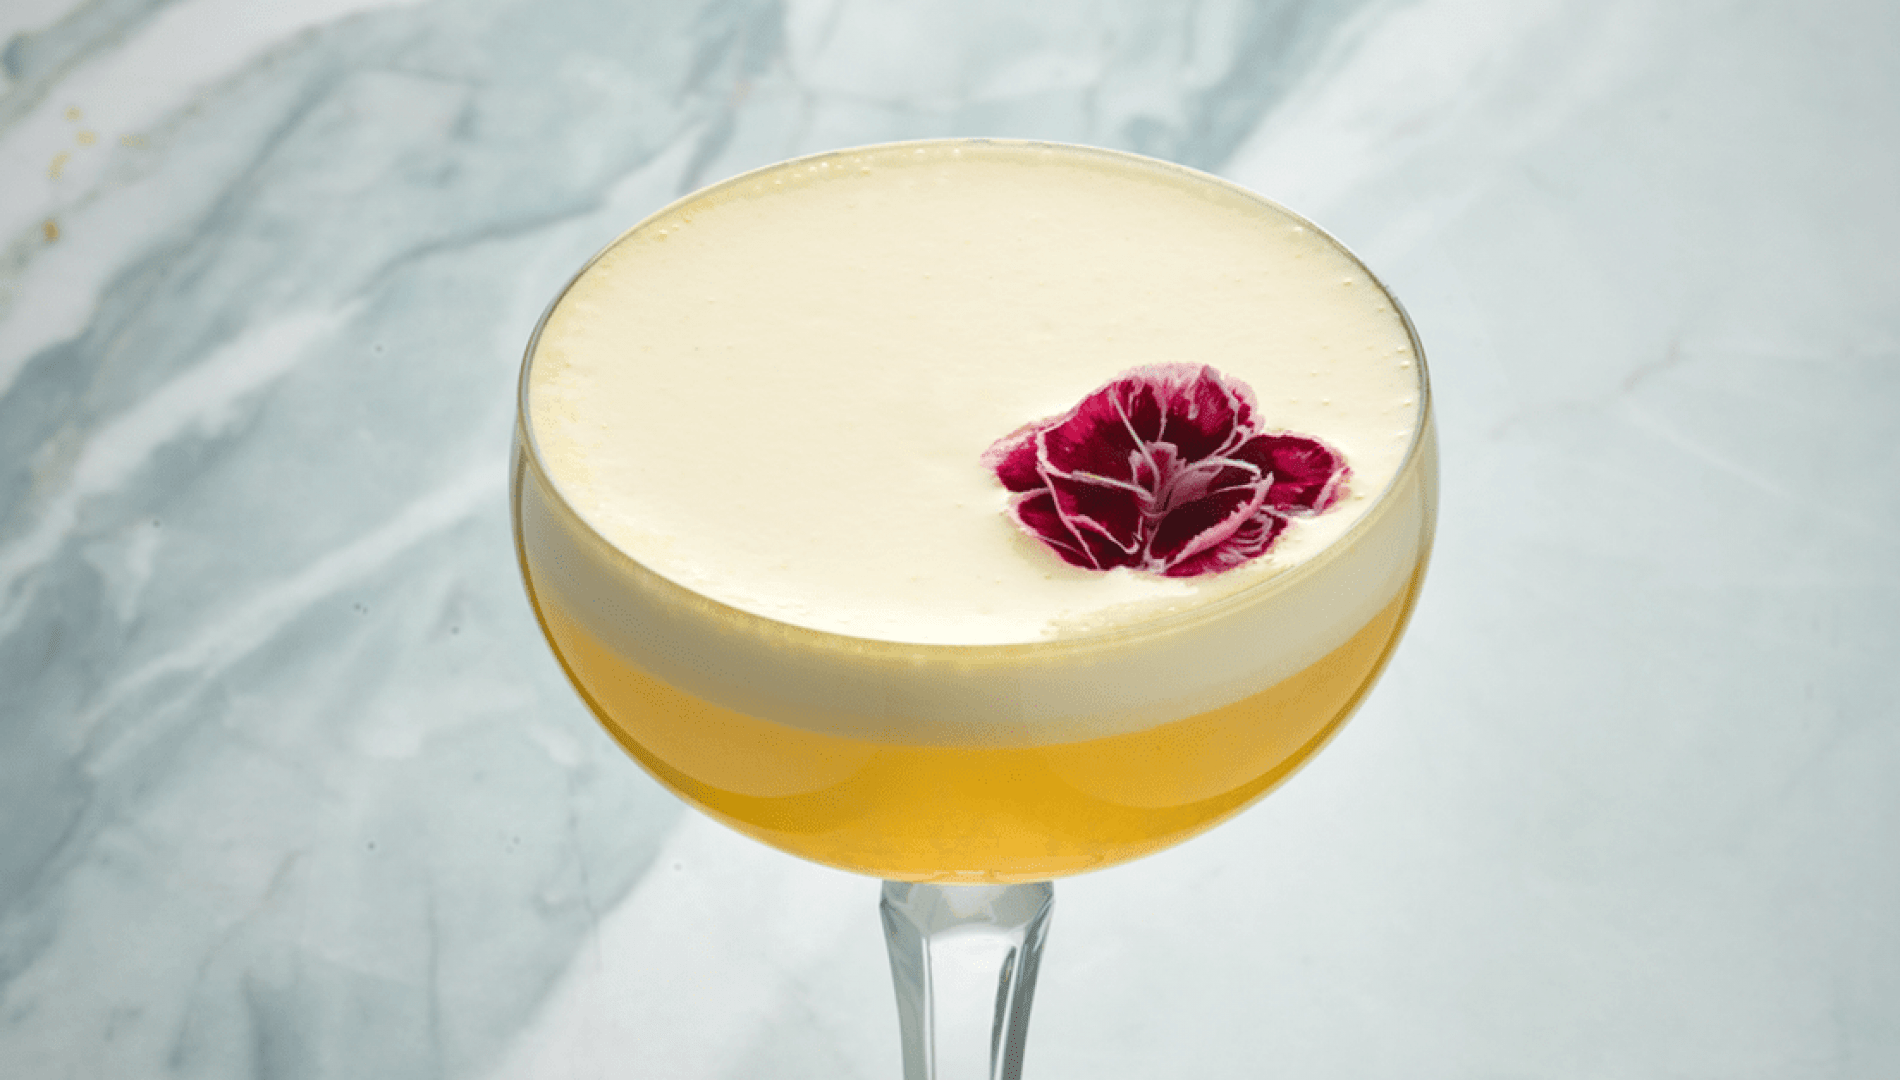 Le cocktail effronté Pornstar Martini de Craftails